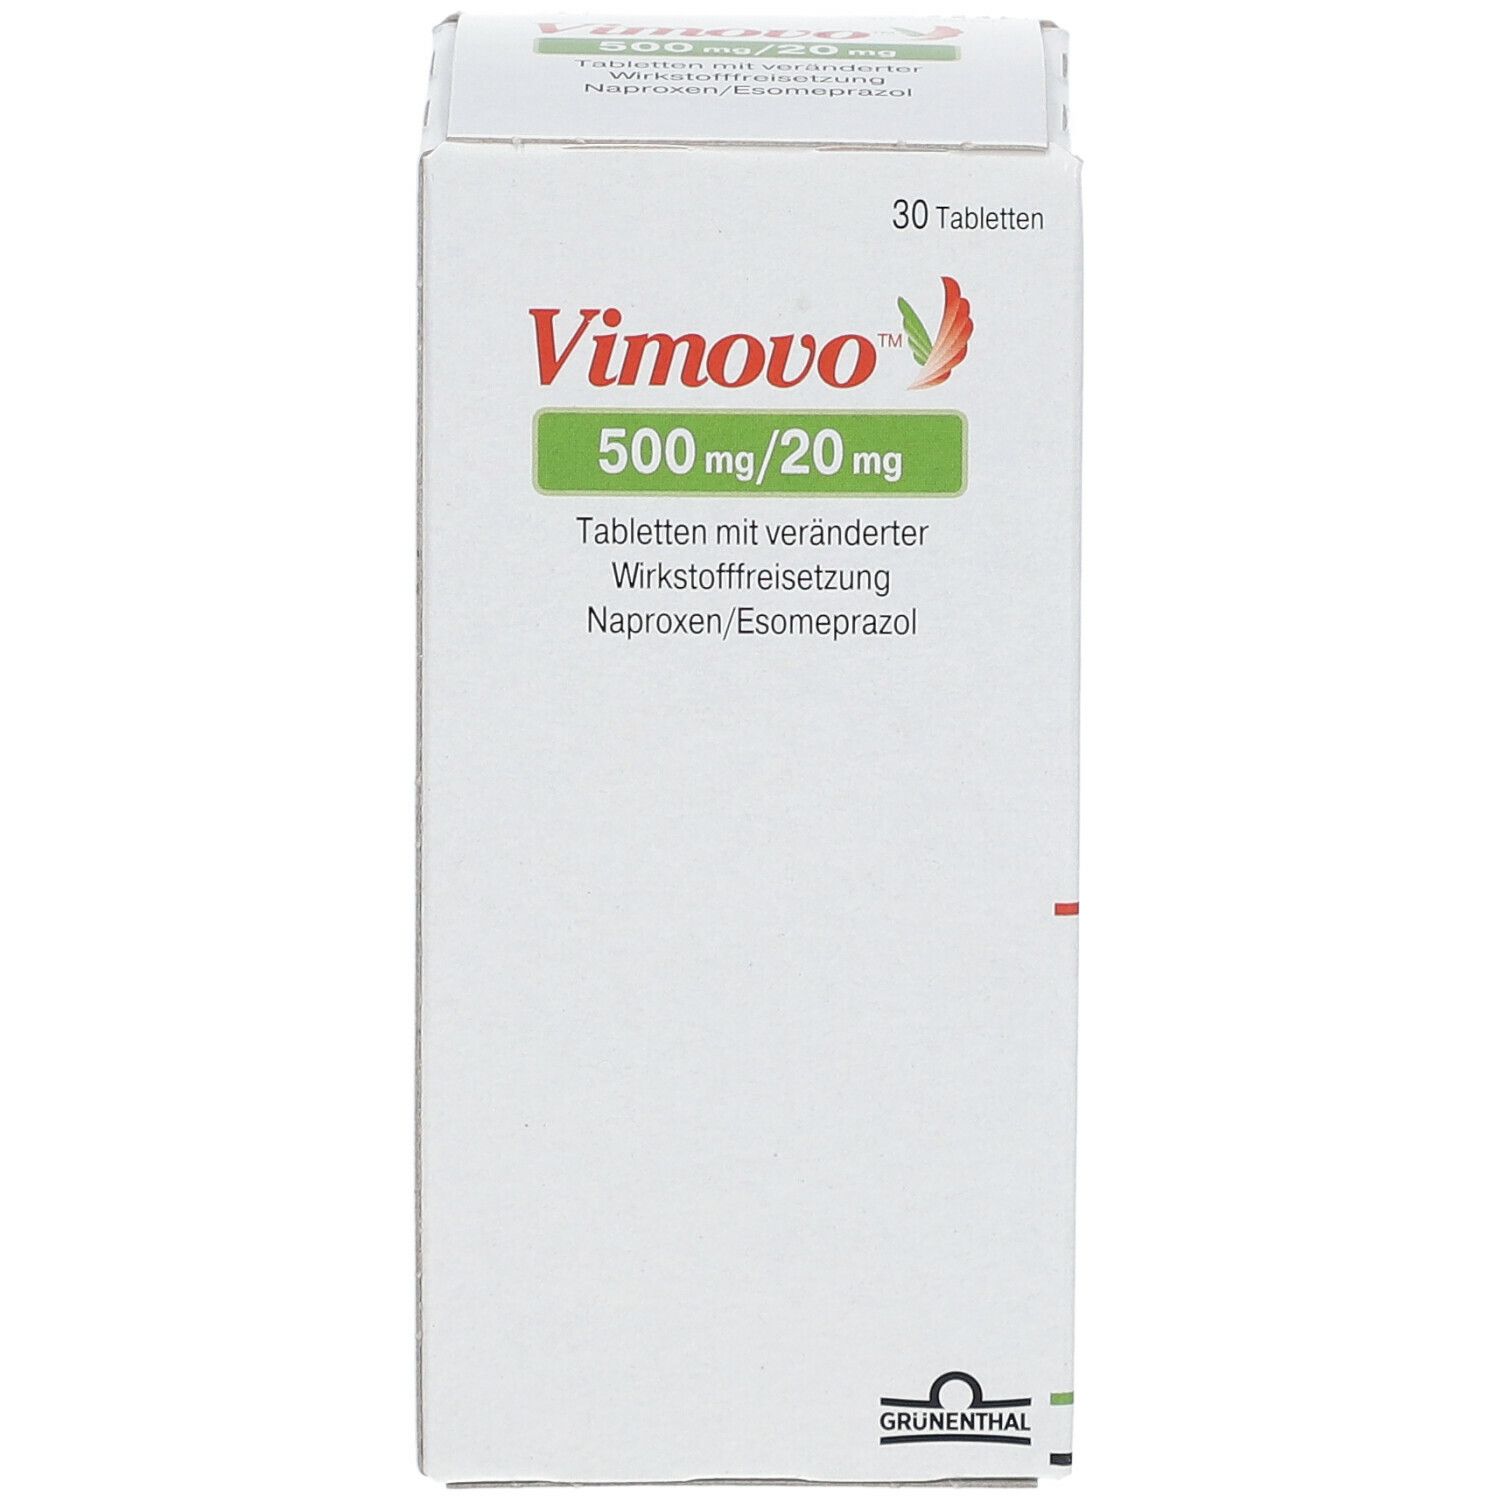 Vimovo™ 500 mg/20 mg 30 St - shop-apotheke.com